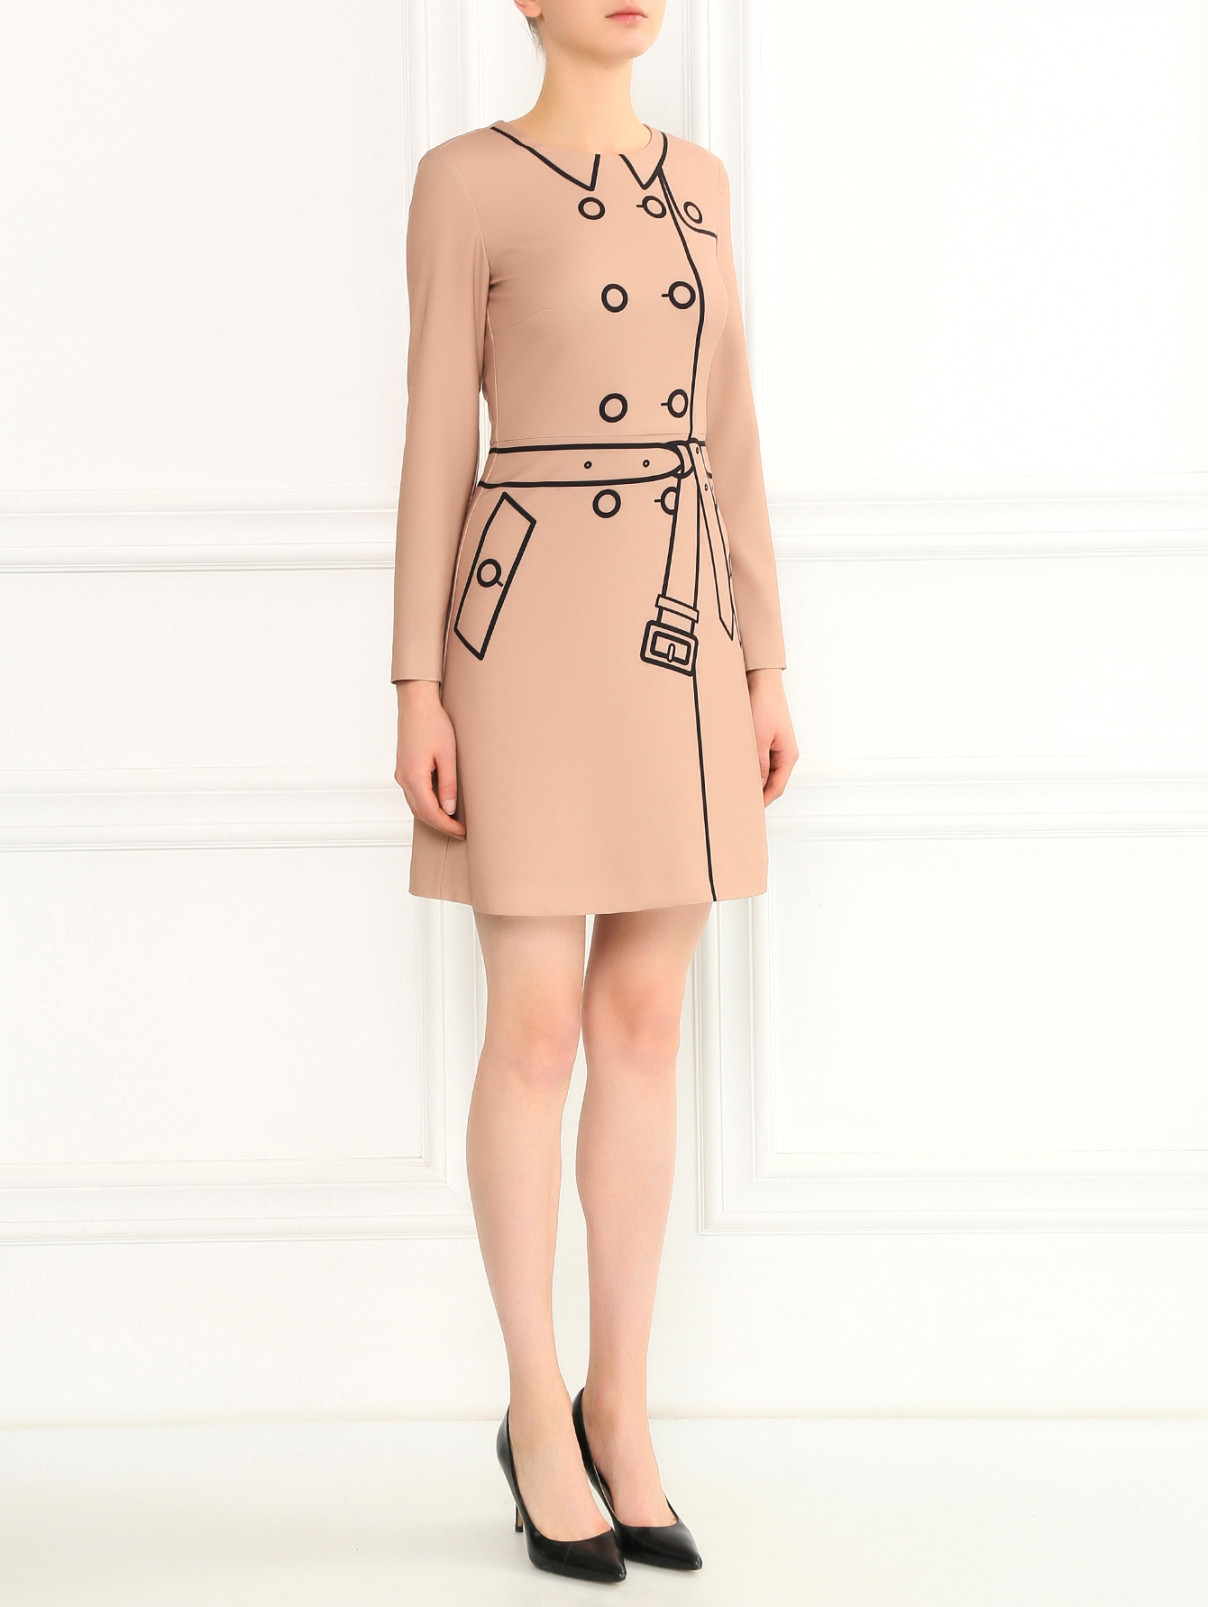 Платье-мини с принтом и длинными рукавами Moschino Boutique  –  Модель Общий вид  – Цвет:  Бежевый